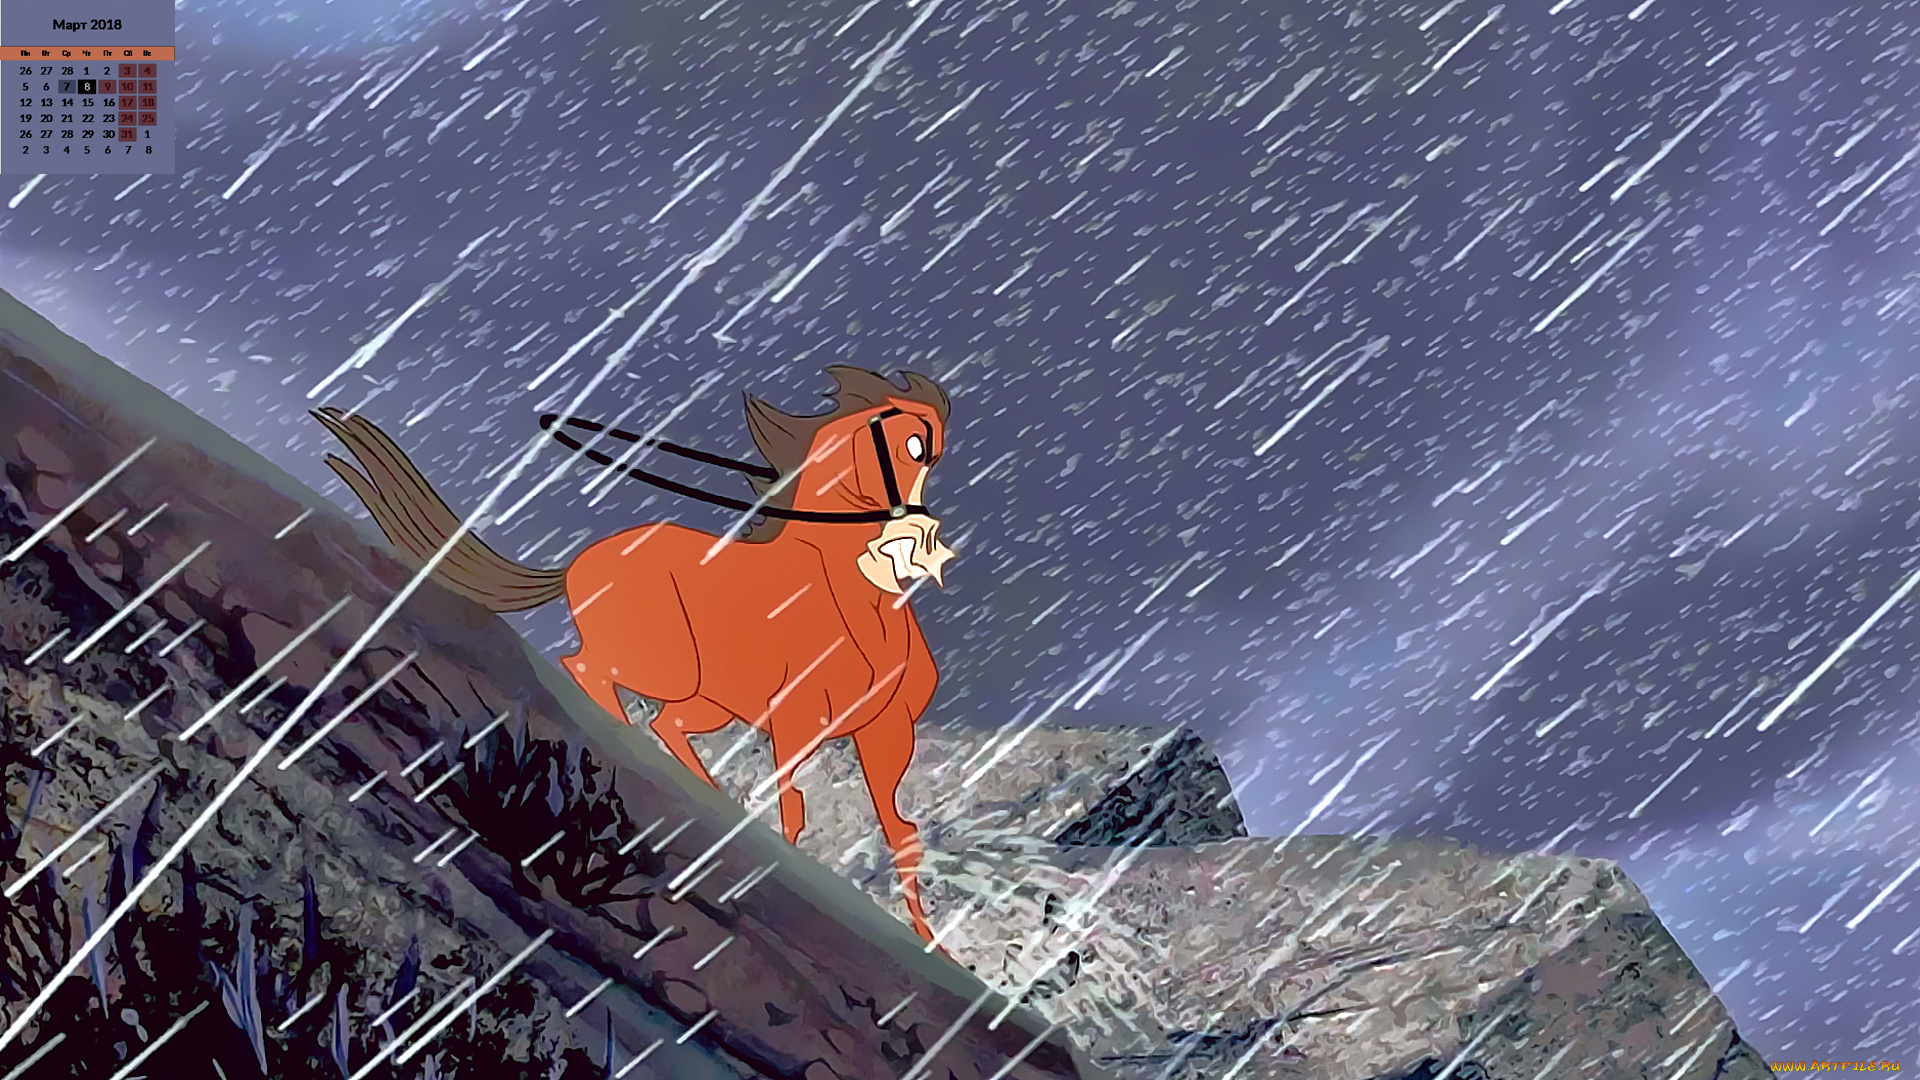 лошадь под дождем фото